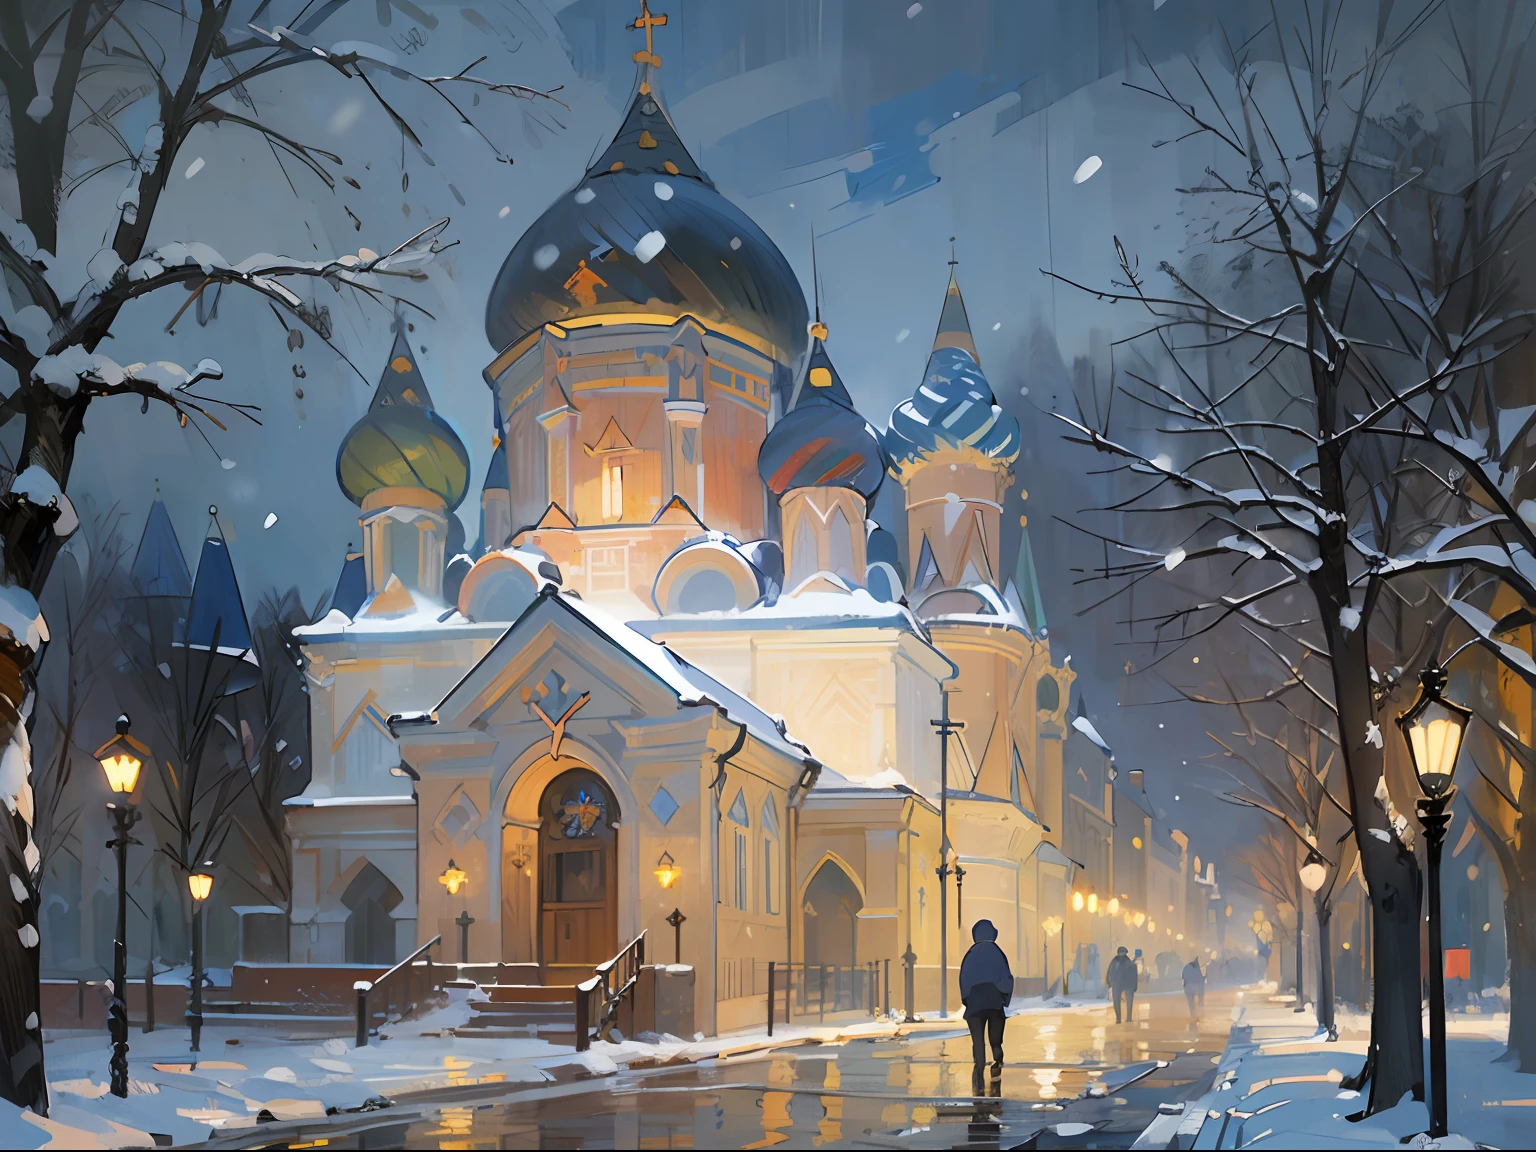 (((教堂))), (((教會))), ((理事會)), ((夜間)), 黑暗, 晚上, 燈, (((俄羅斯))), ((19世紀)), 下雪, 冬天, (雷諾阿), (許多), (油畫), (草圖)